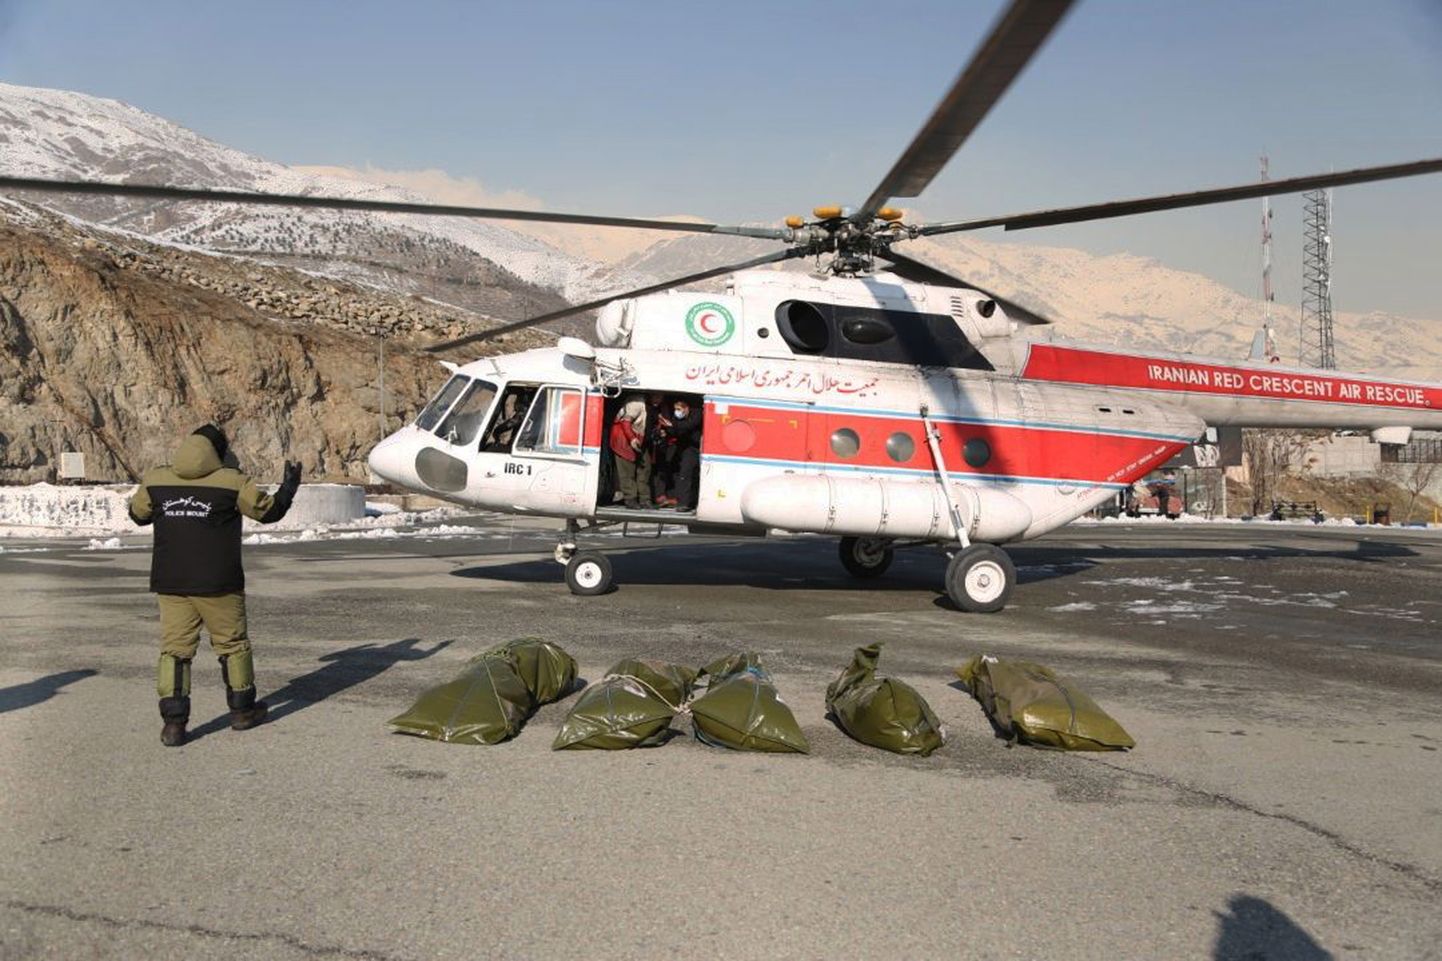 Glābšanas helikopters un lavīnas upuri Irānā